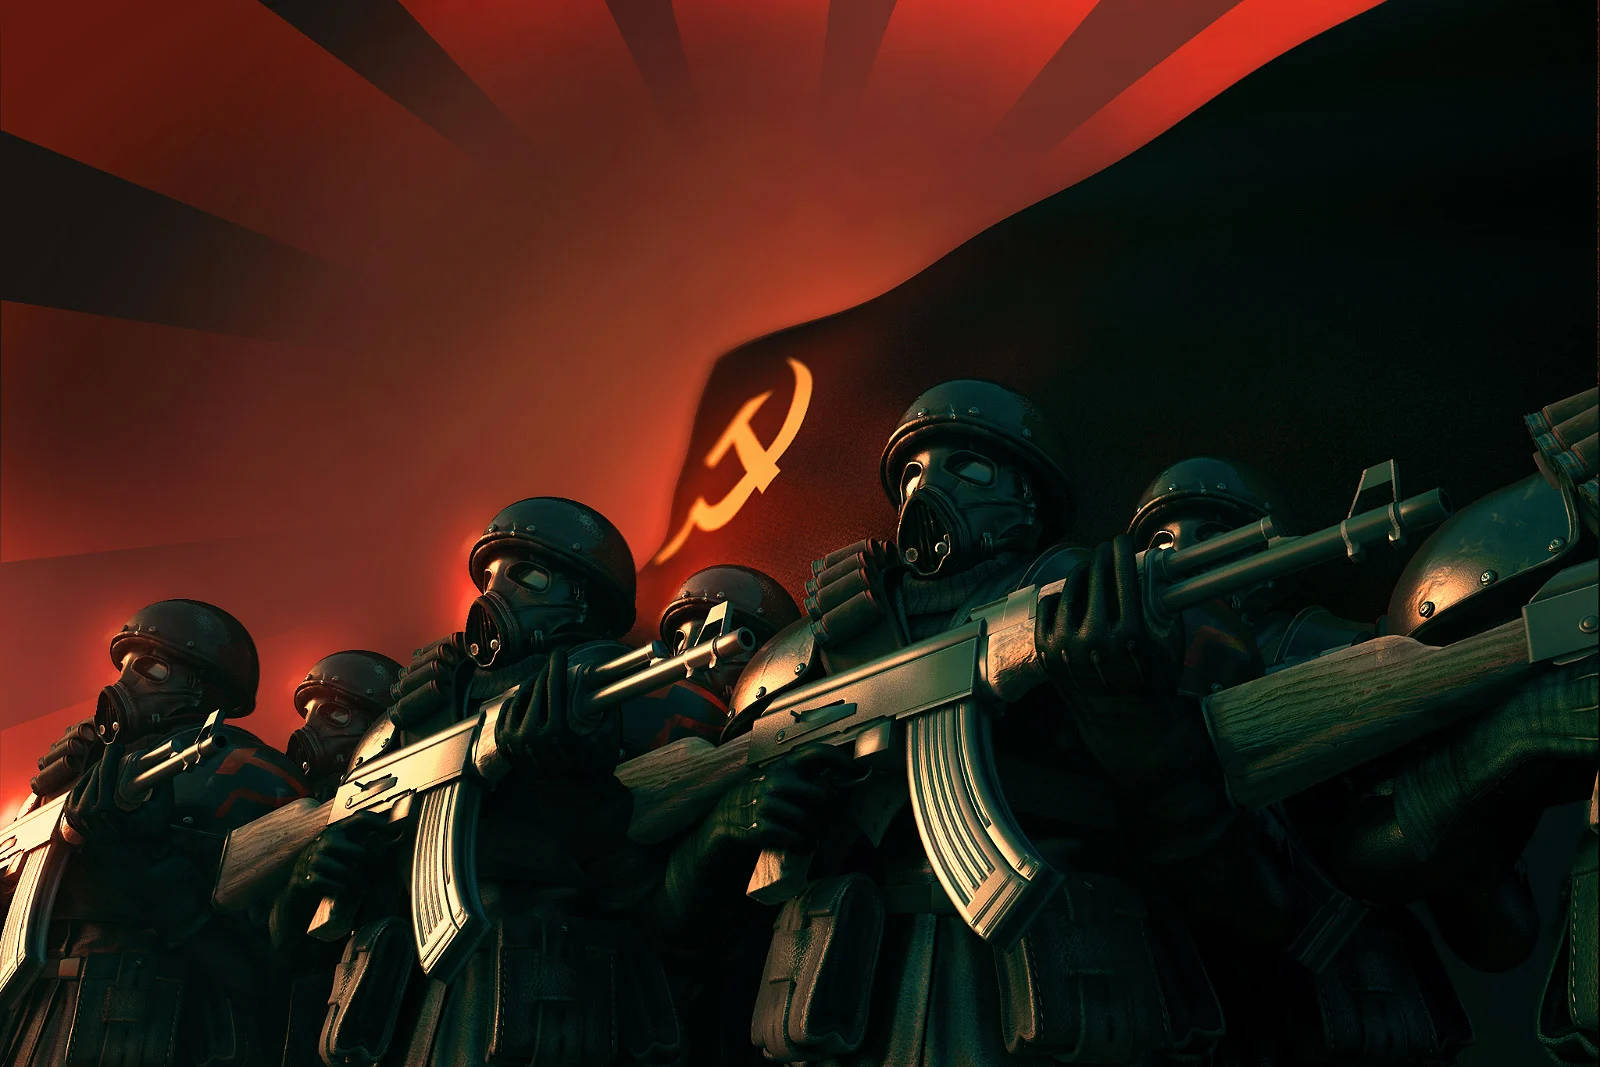 Rysksoldat Och Sovjetunionens Flagga. Wallpaper